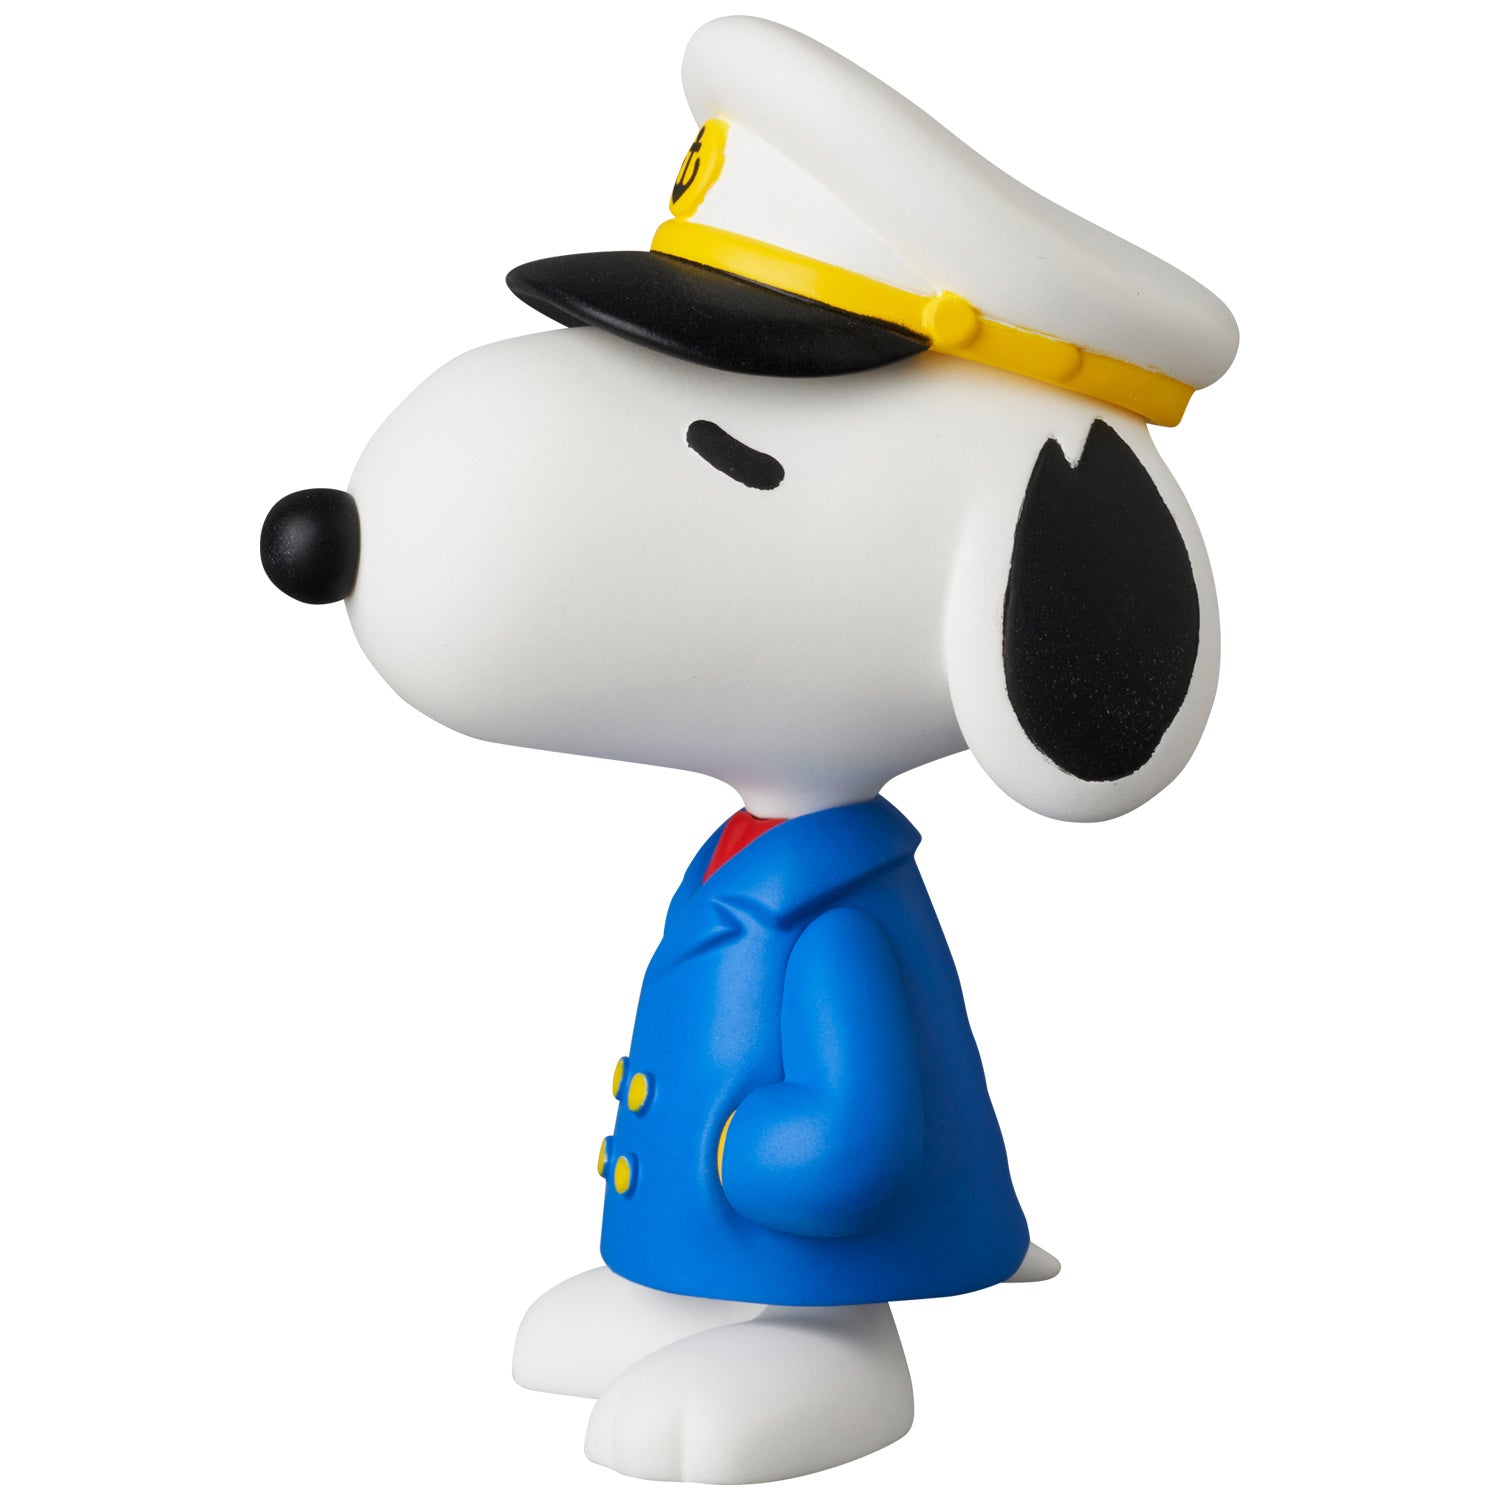 Medicom - UDF 767 - Peanuts Series 16 - Captain Snoopy - Marvelous Toys